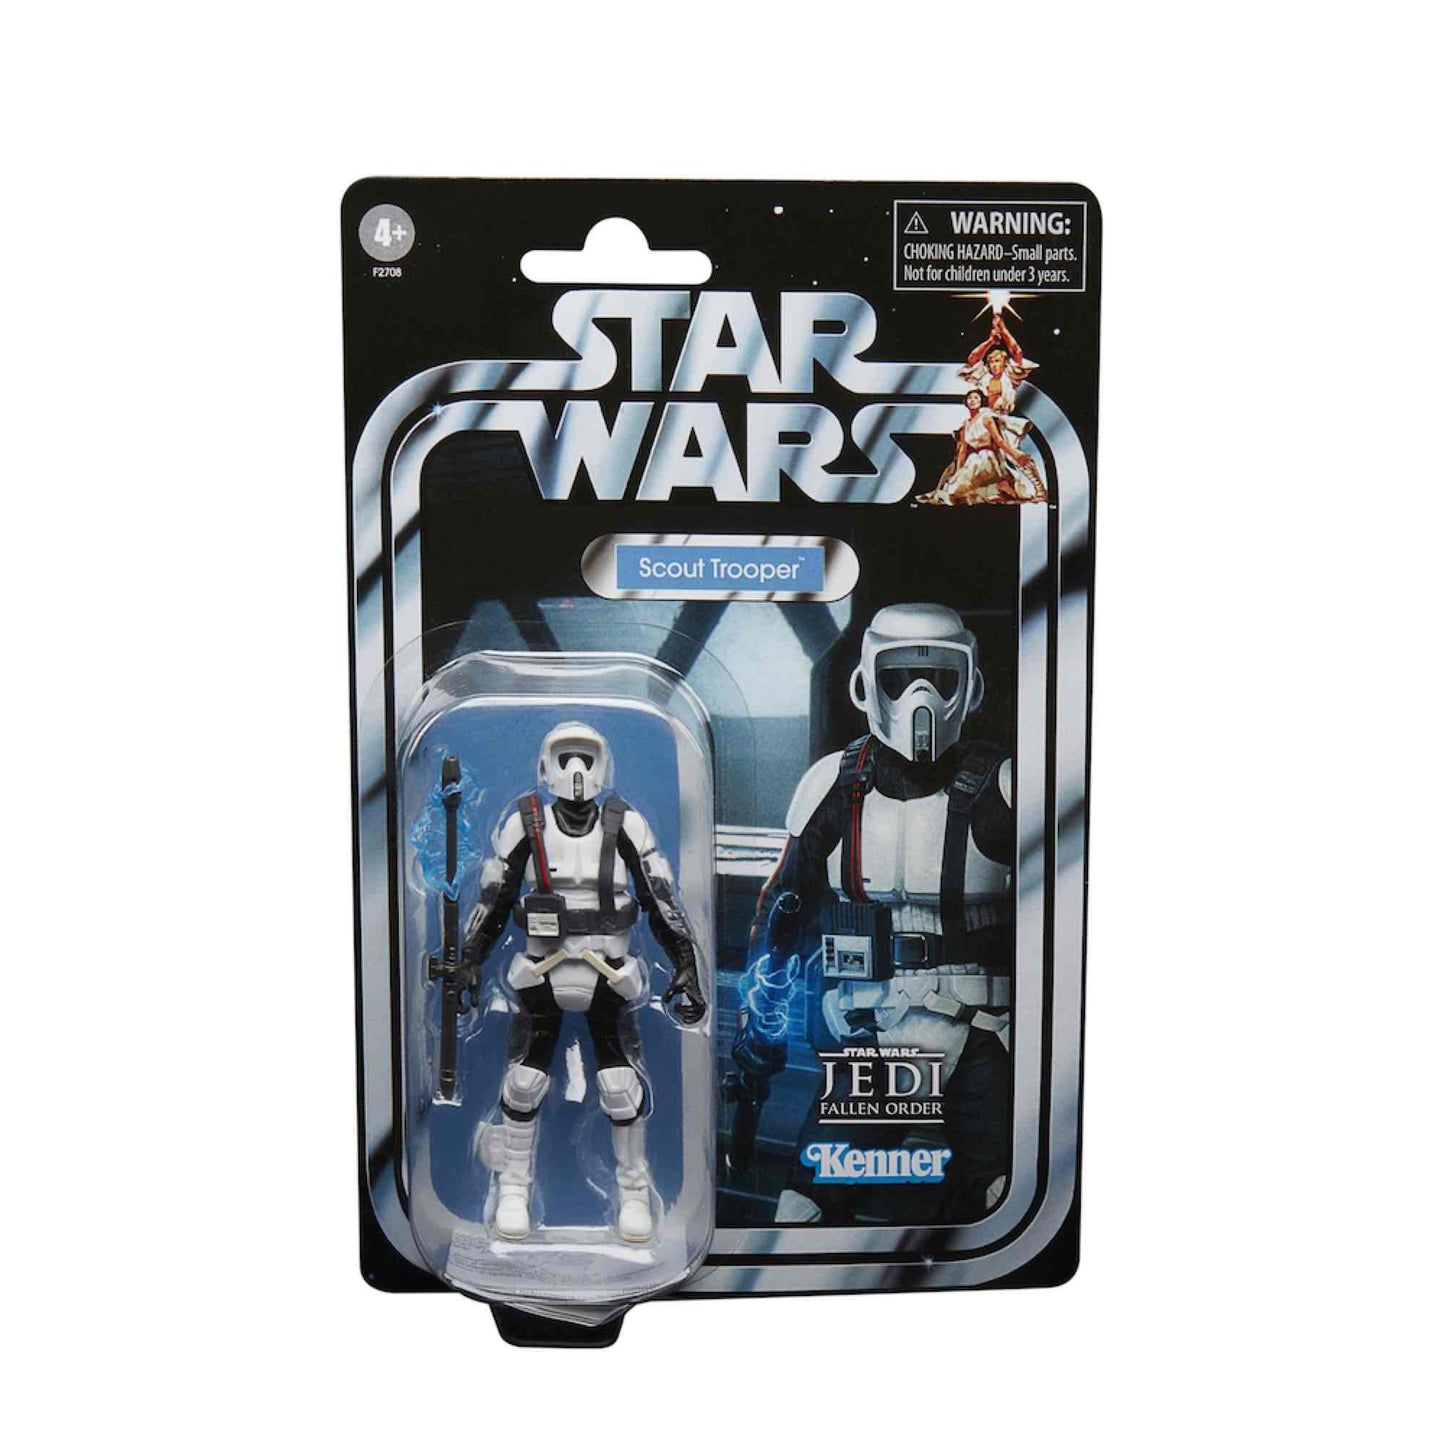 Scout Trooper - Star Wars: Jedi Fallen Order Hasbro Vintage